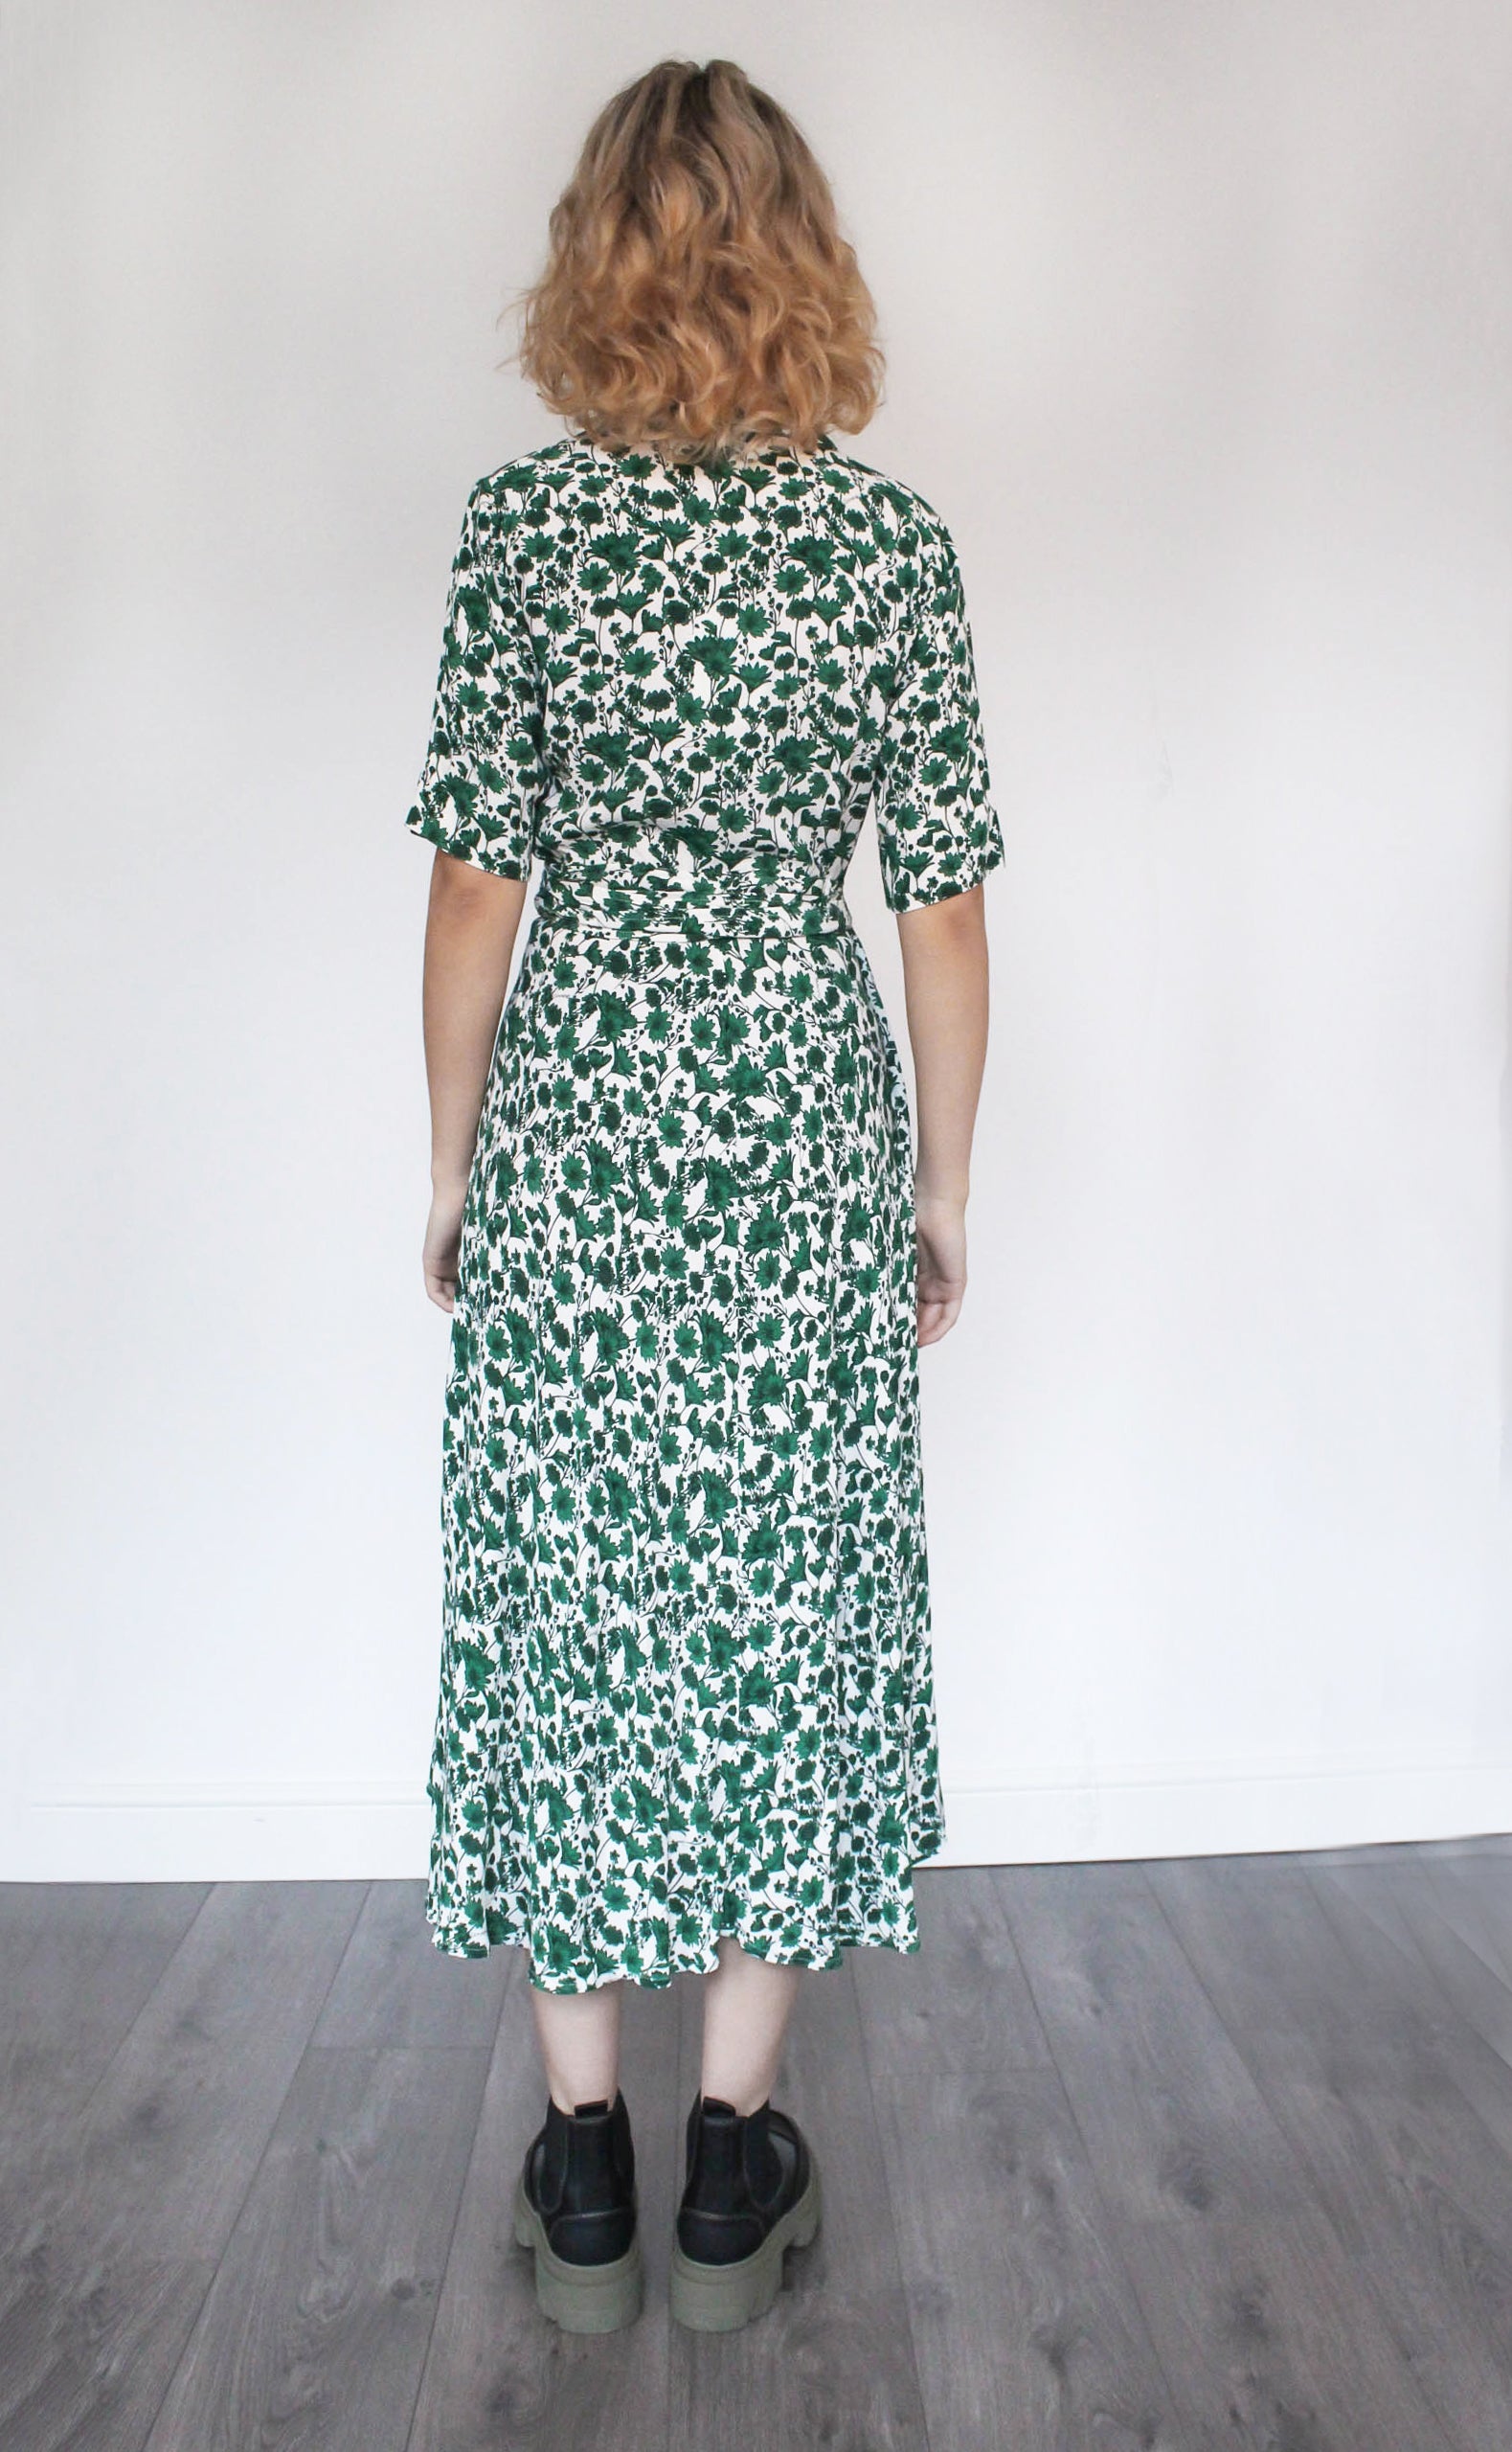 GANNI F6268 Printed Wrap Dress in Dark Green